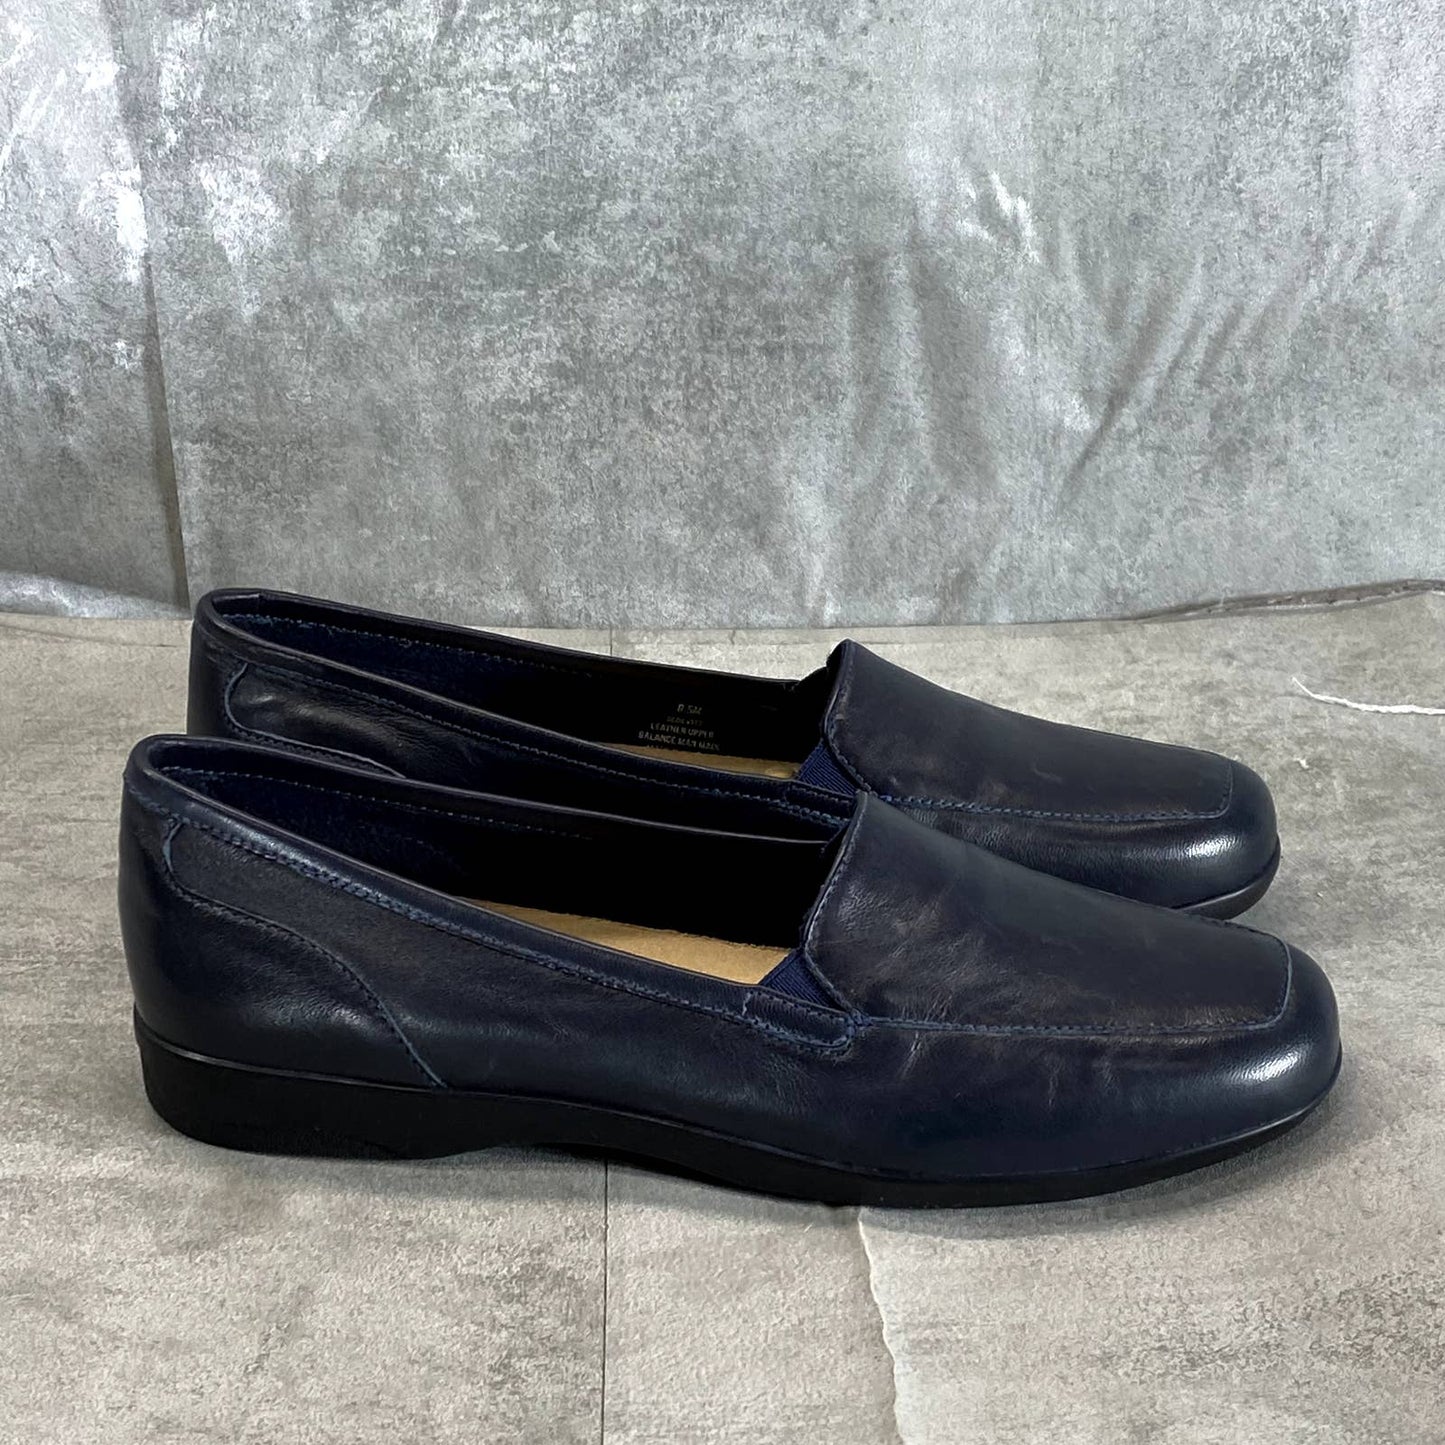 EASY SPIRIT Women's Dark Blue Leather Devitt Round-Toe Slip-On Loafer SZ 8.5